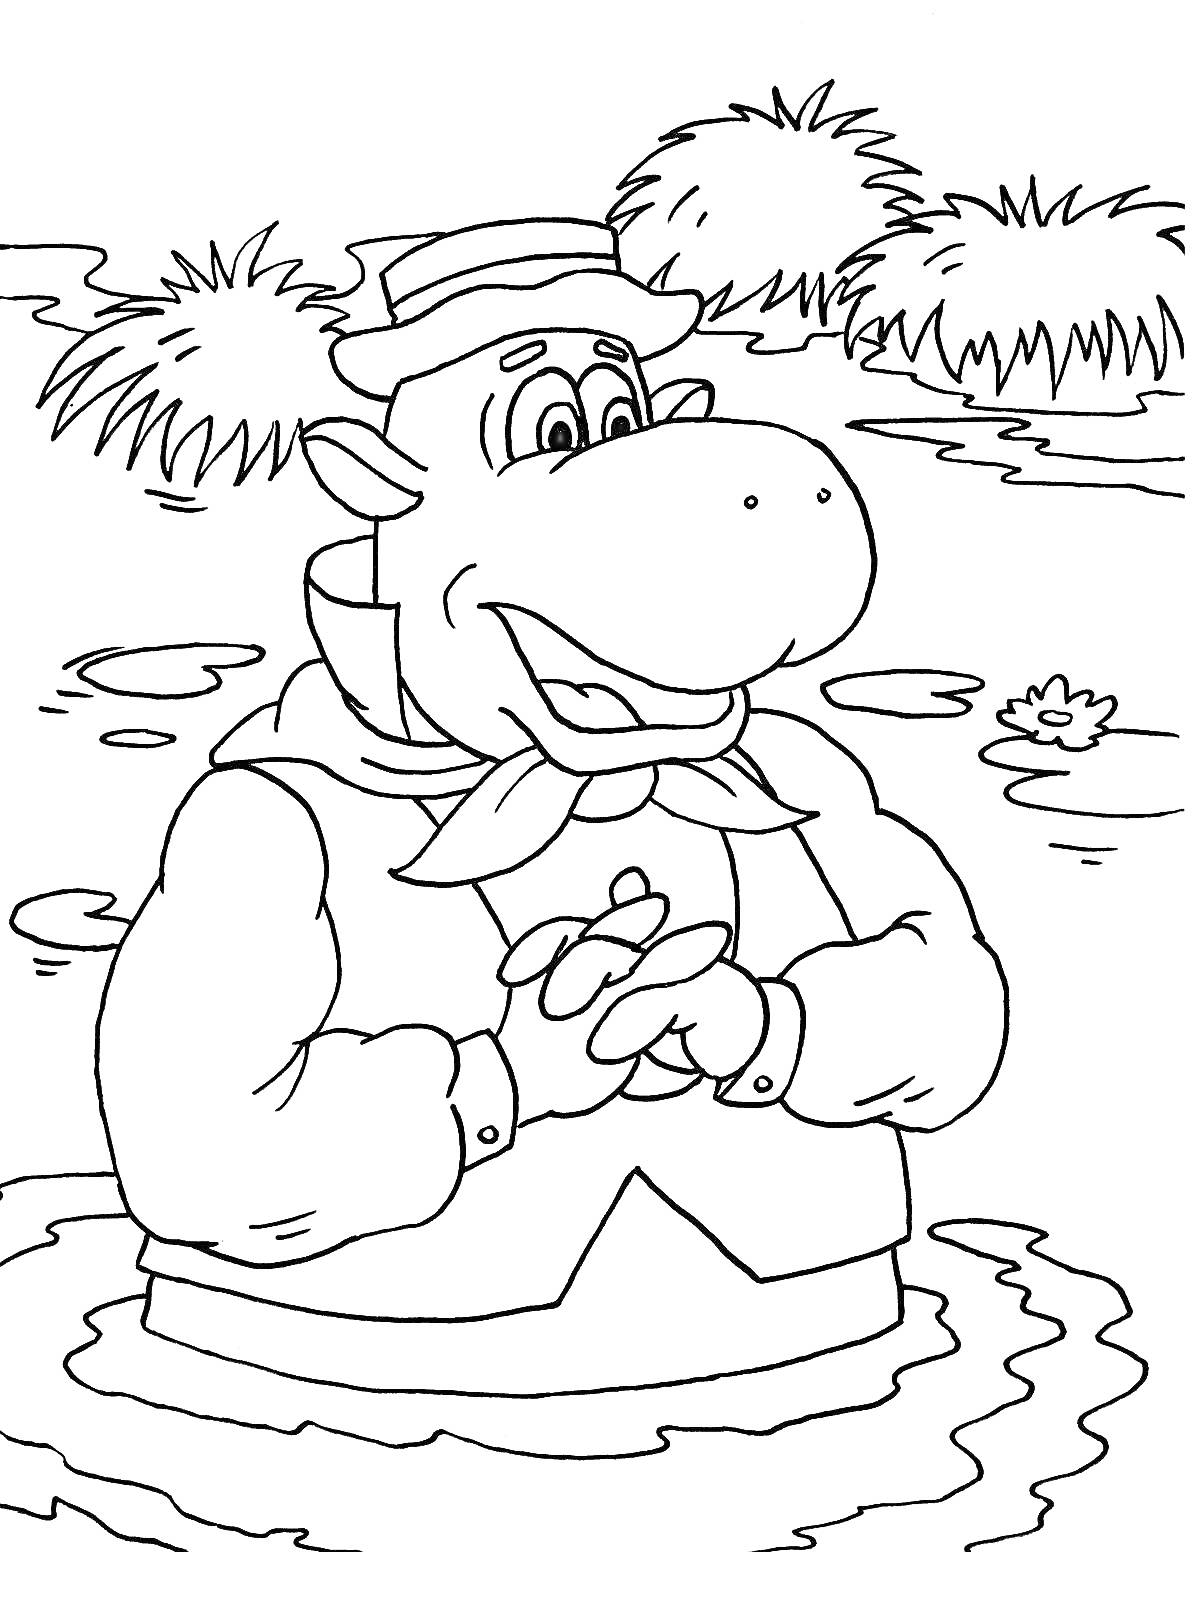 персонаж в шляпе и одежде стоит в воде среди камышей